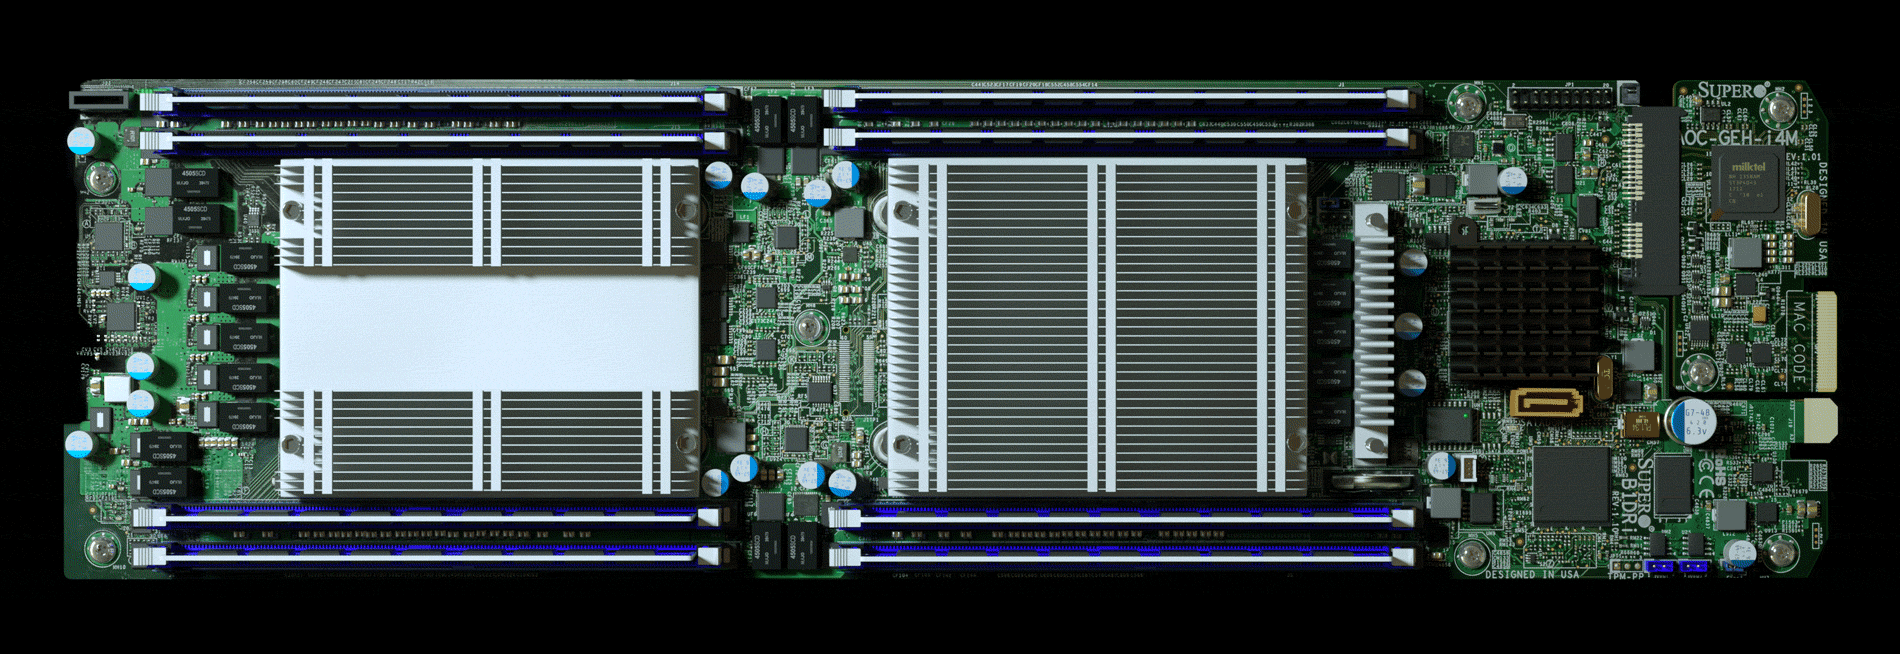 Глава Apple заявил, что китайские шпионские чипы в серверах Supermicro — выдумка - 2